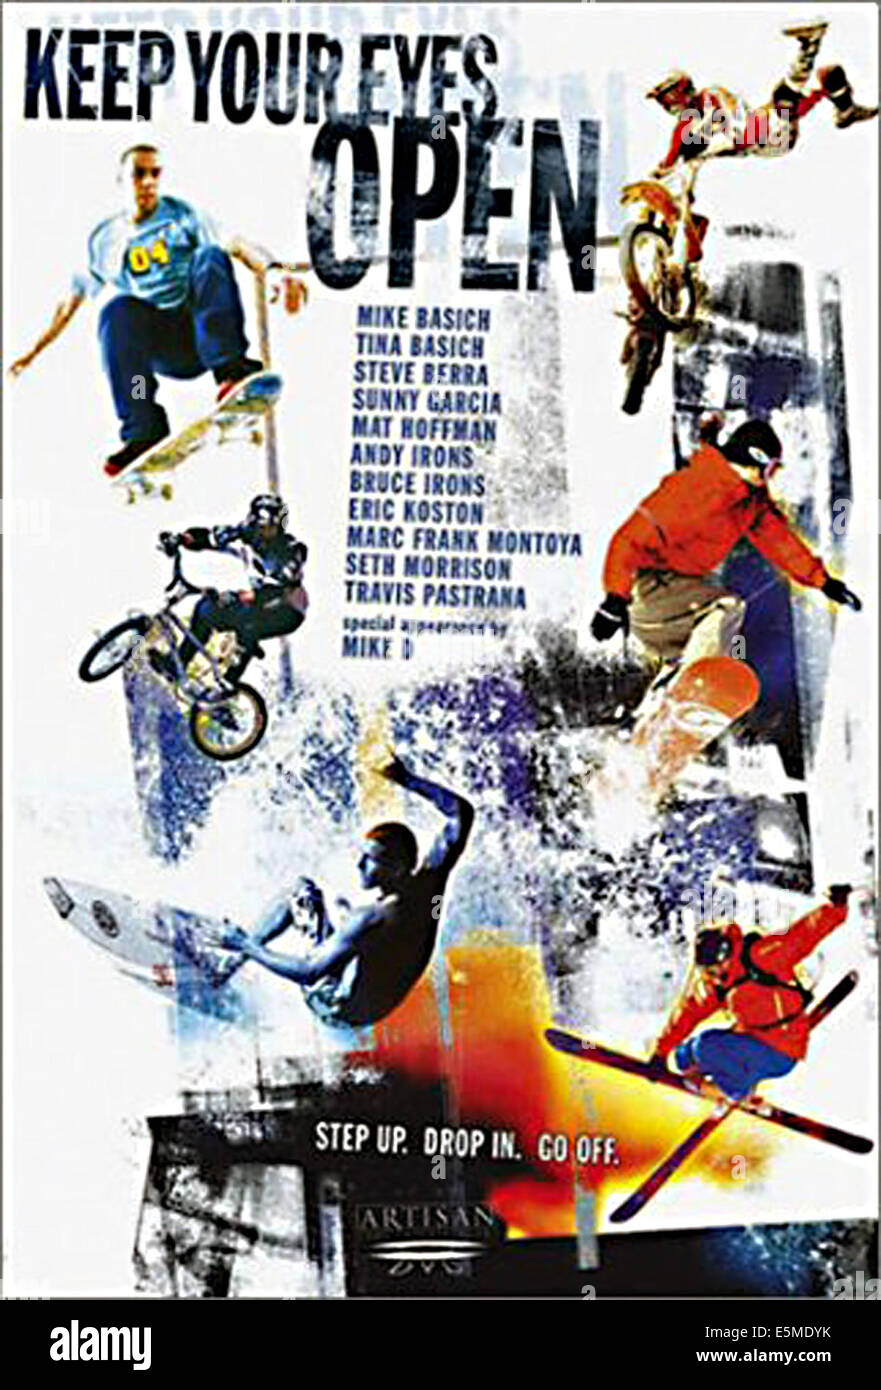 Gardez les yeux ouverts, 2002. Documentaire sur les sports extrêmes.  (C)Artisan Entertainment. Avec la permission de : Everett Collection Photo  Stock - Alamy